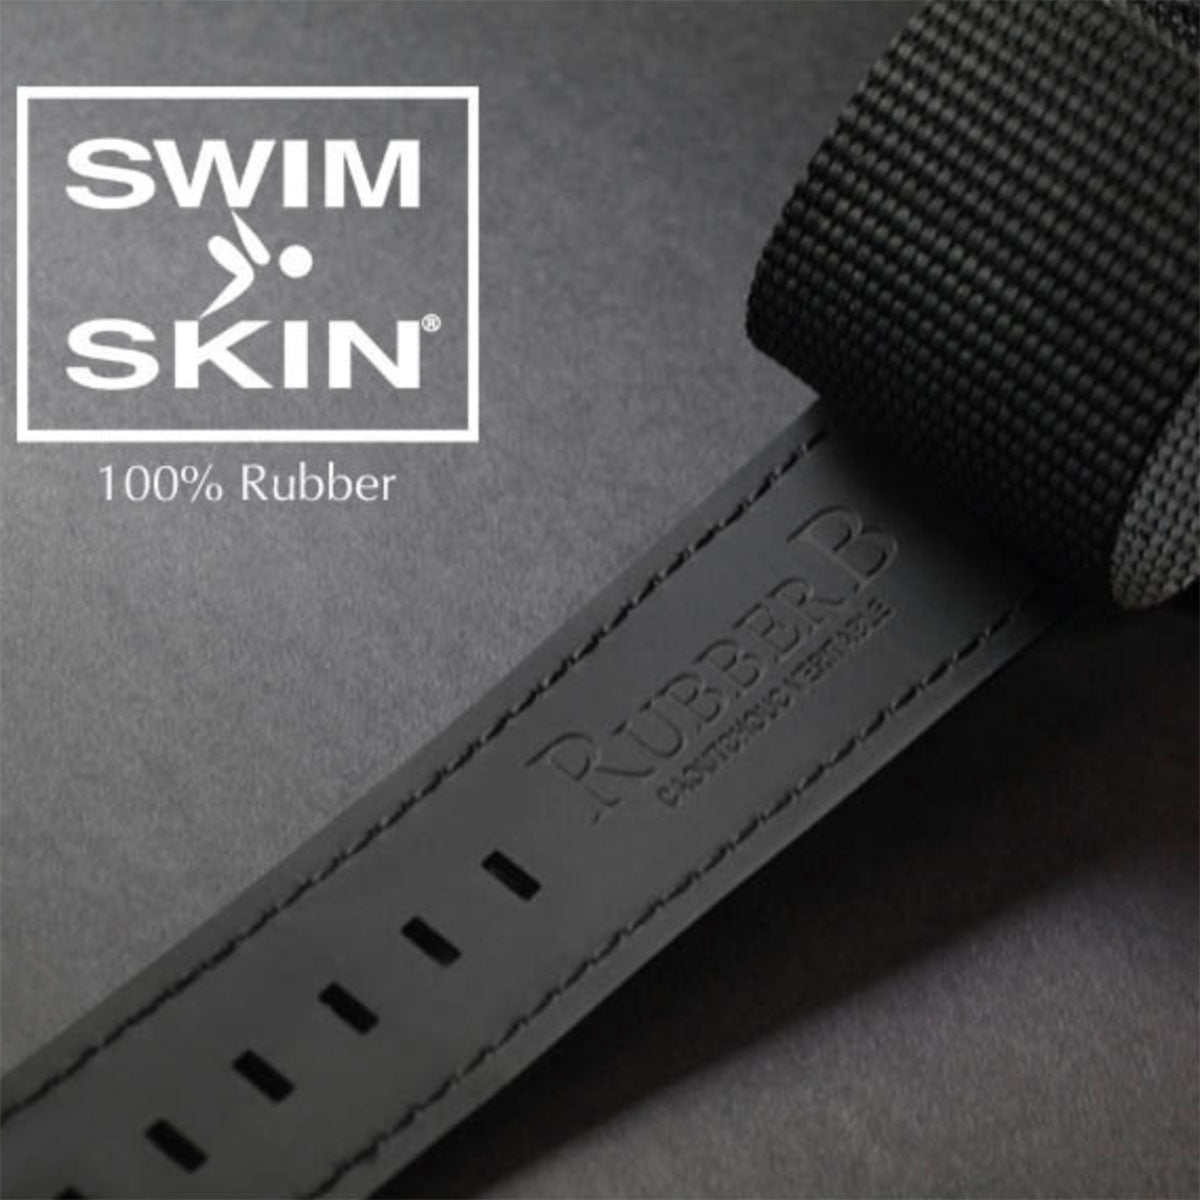 Rolex - Rubber B - Bracelet caoutchouc pour Air-King 40mm - Série Bund - watch band leather strap - ABP Concept -